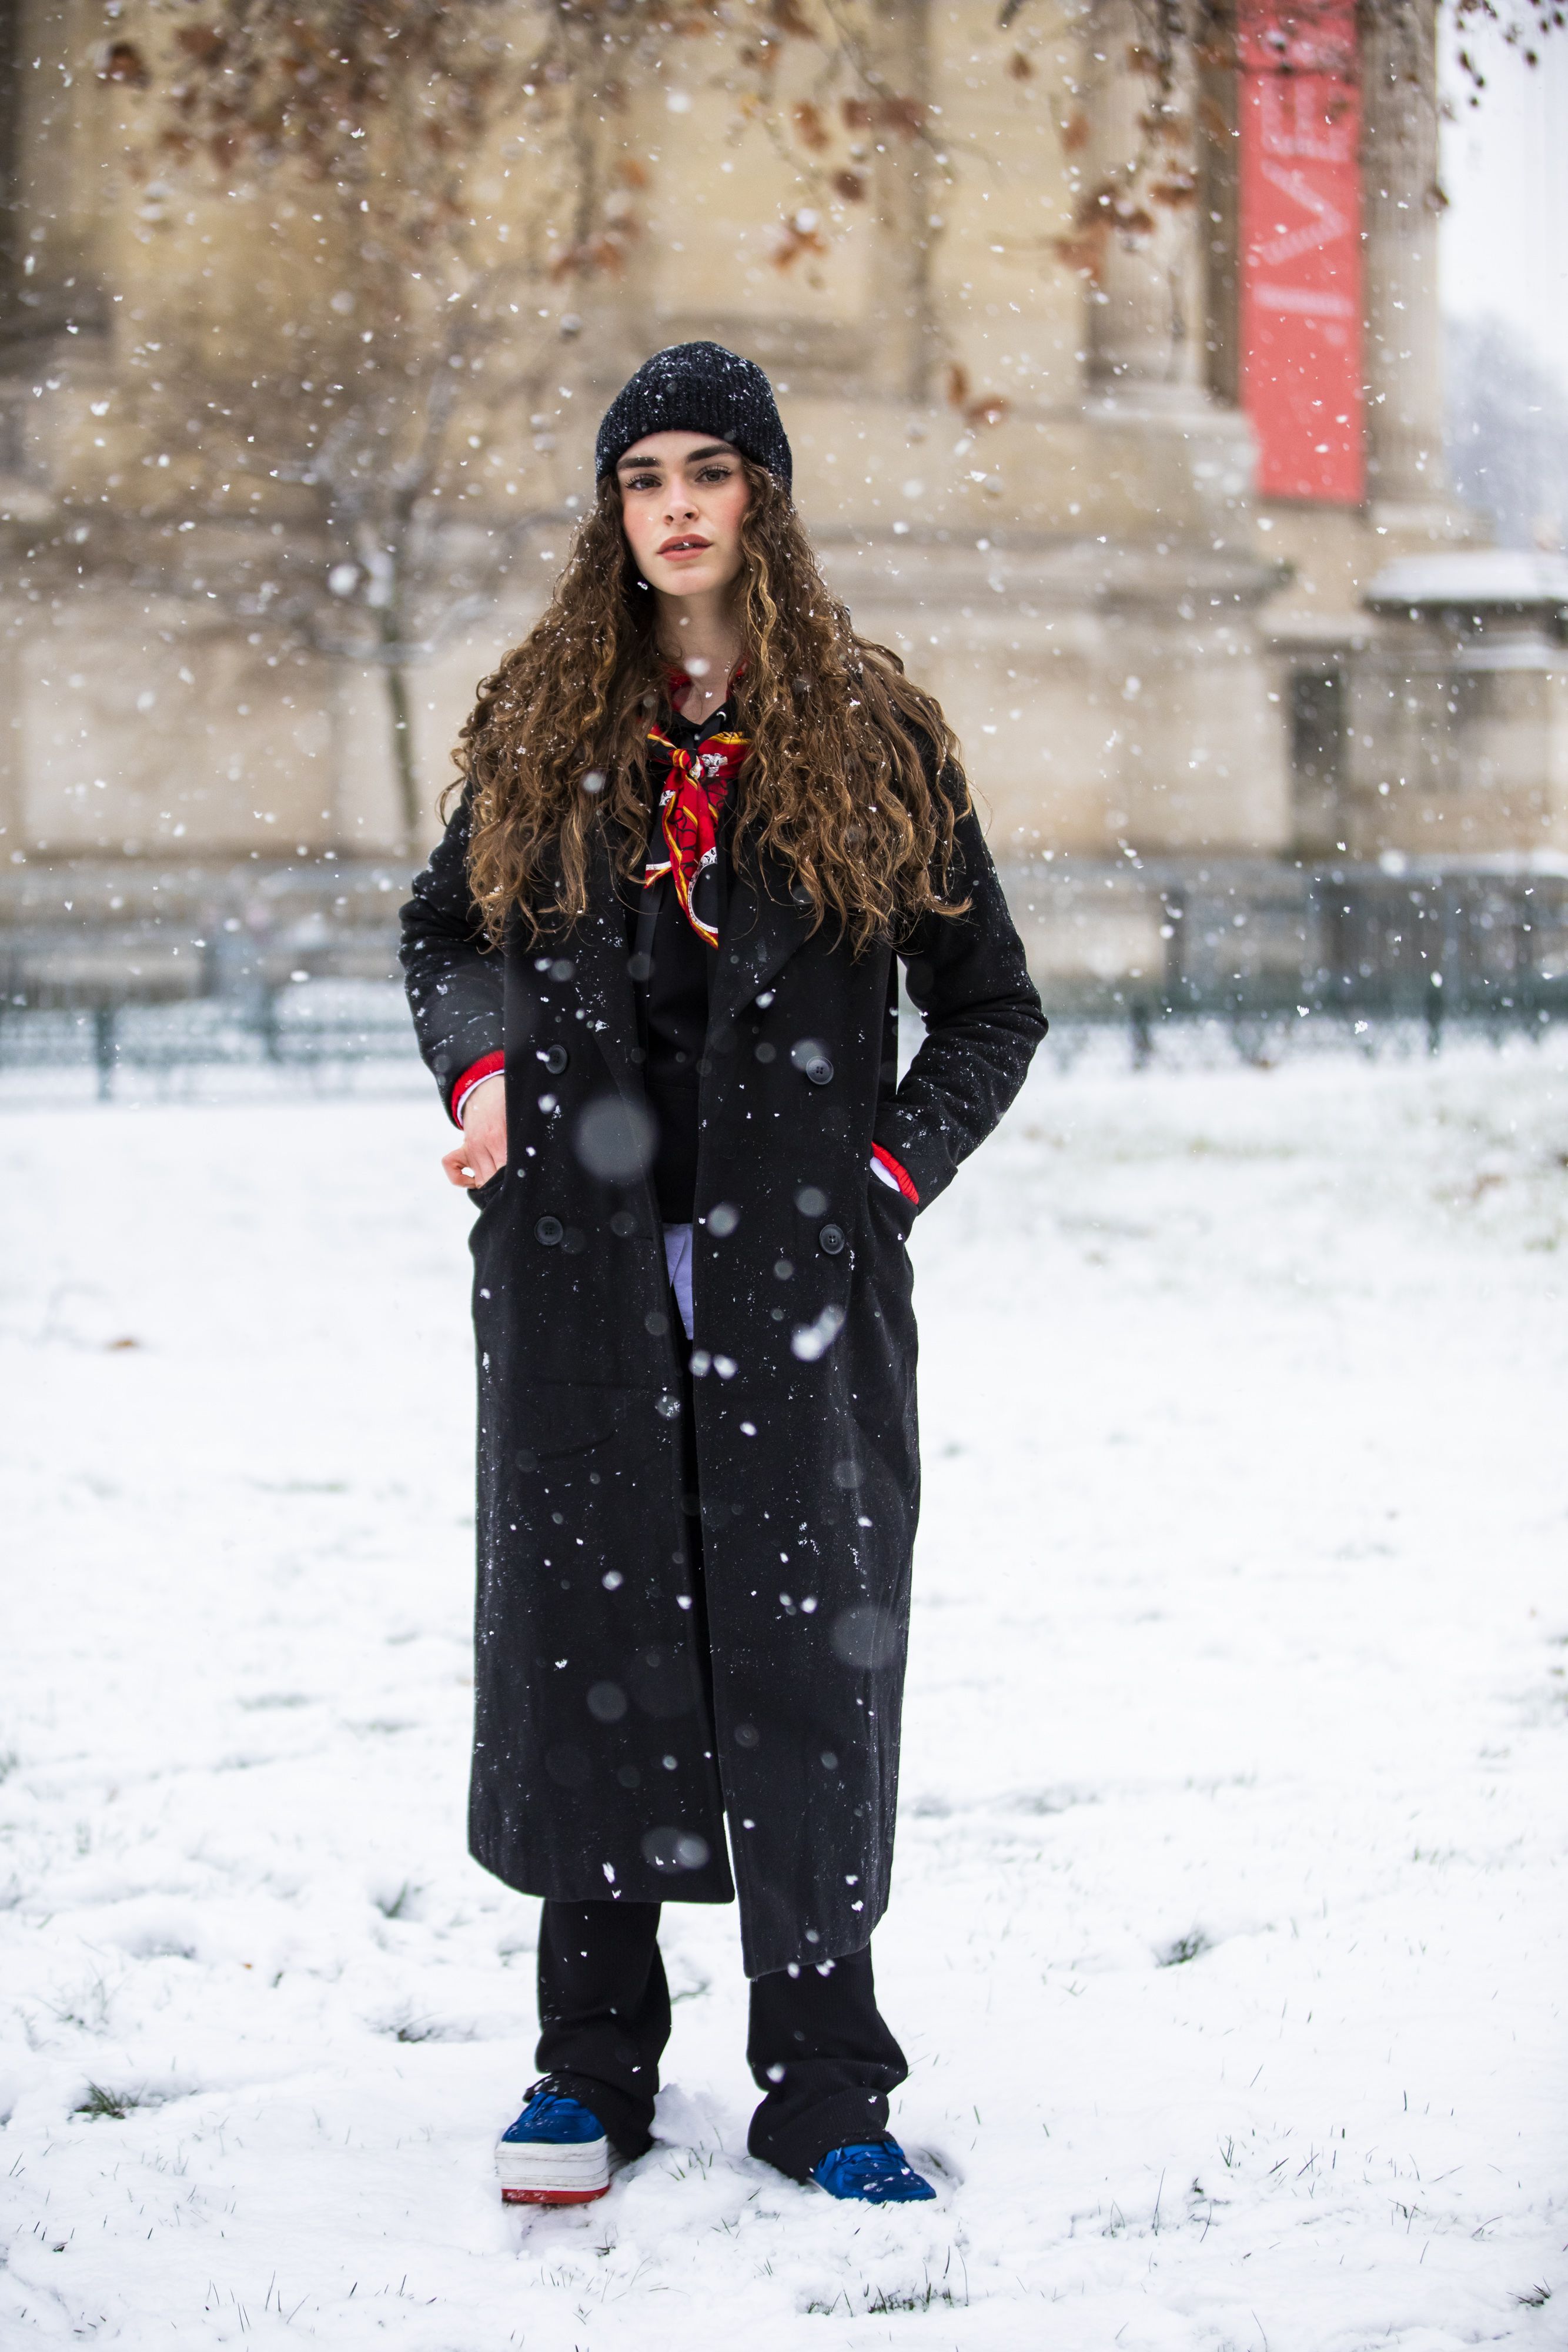 10 Botas de nieve que te harán lucir elegante hasta en la peor tormenta